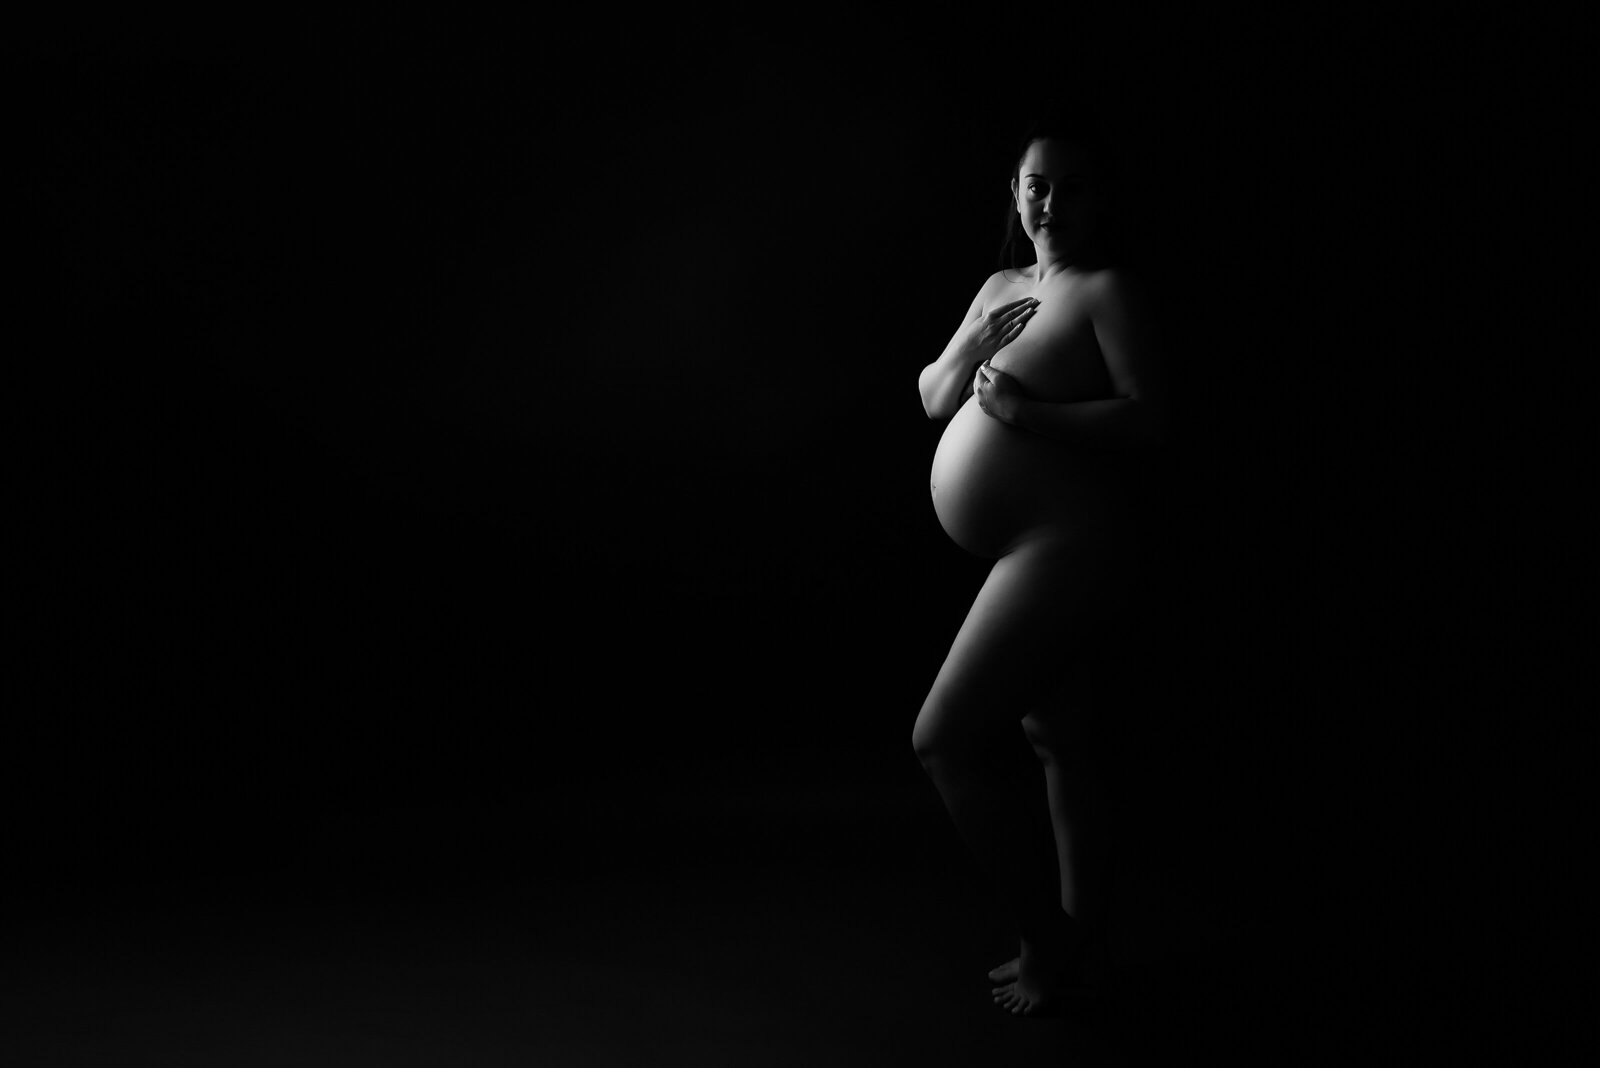 creative black and white maternity portrait in studio